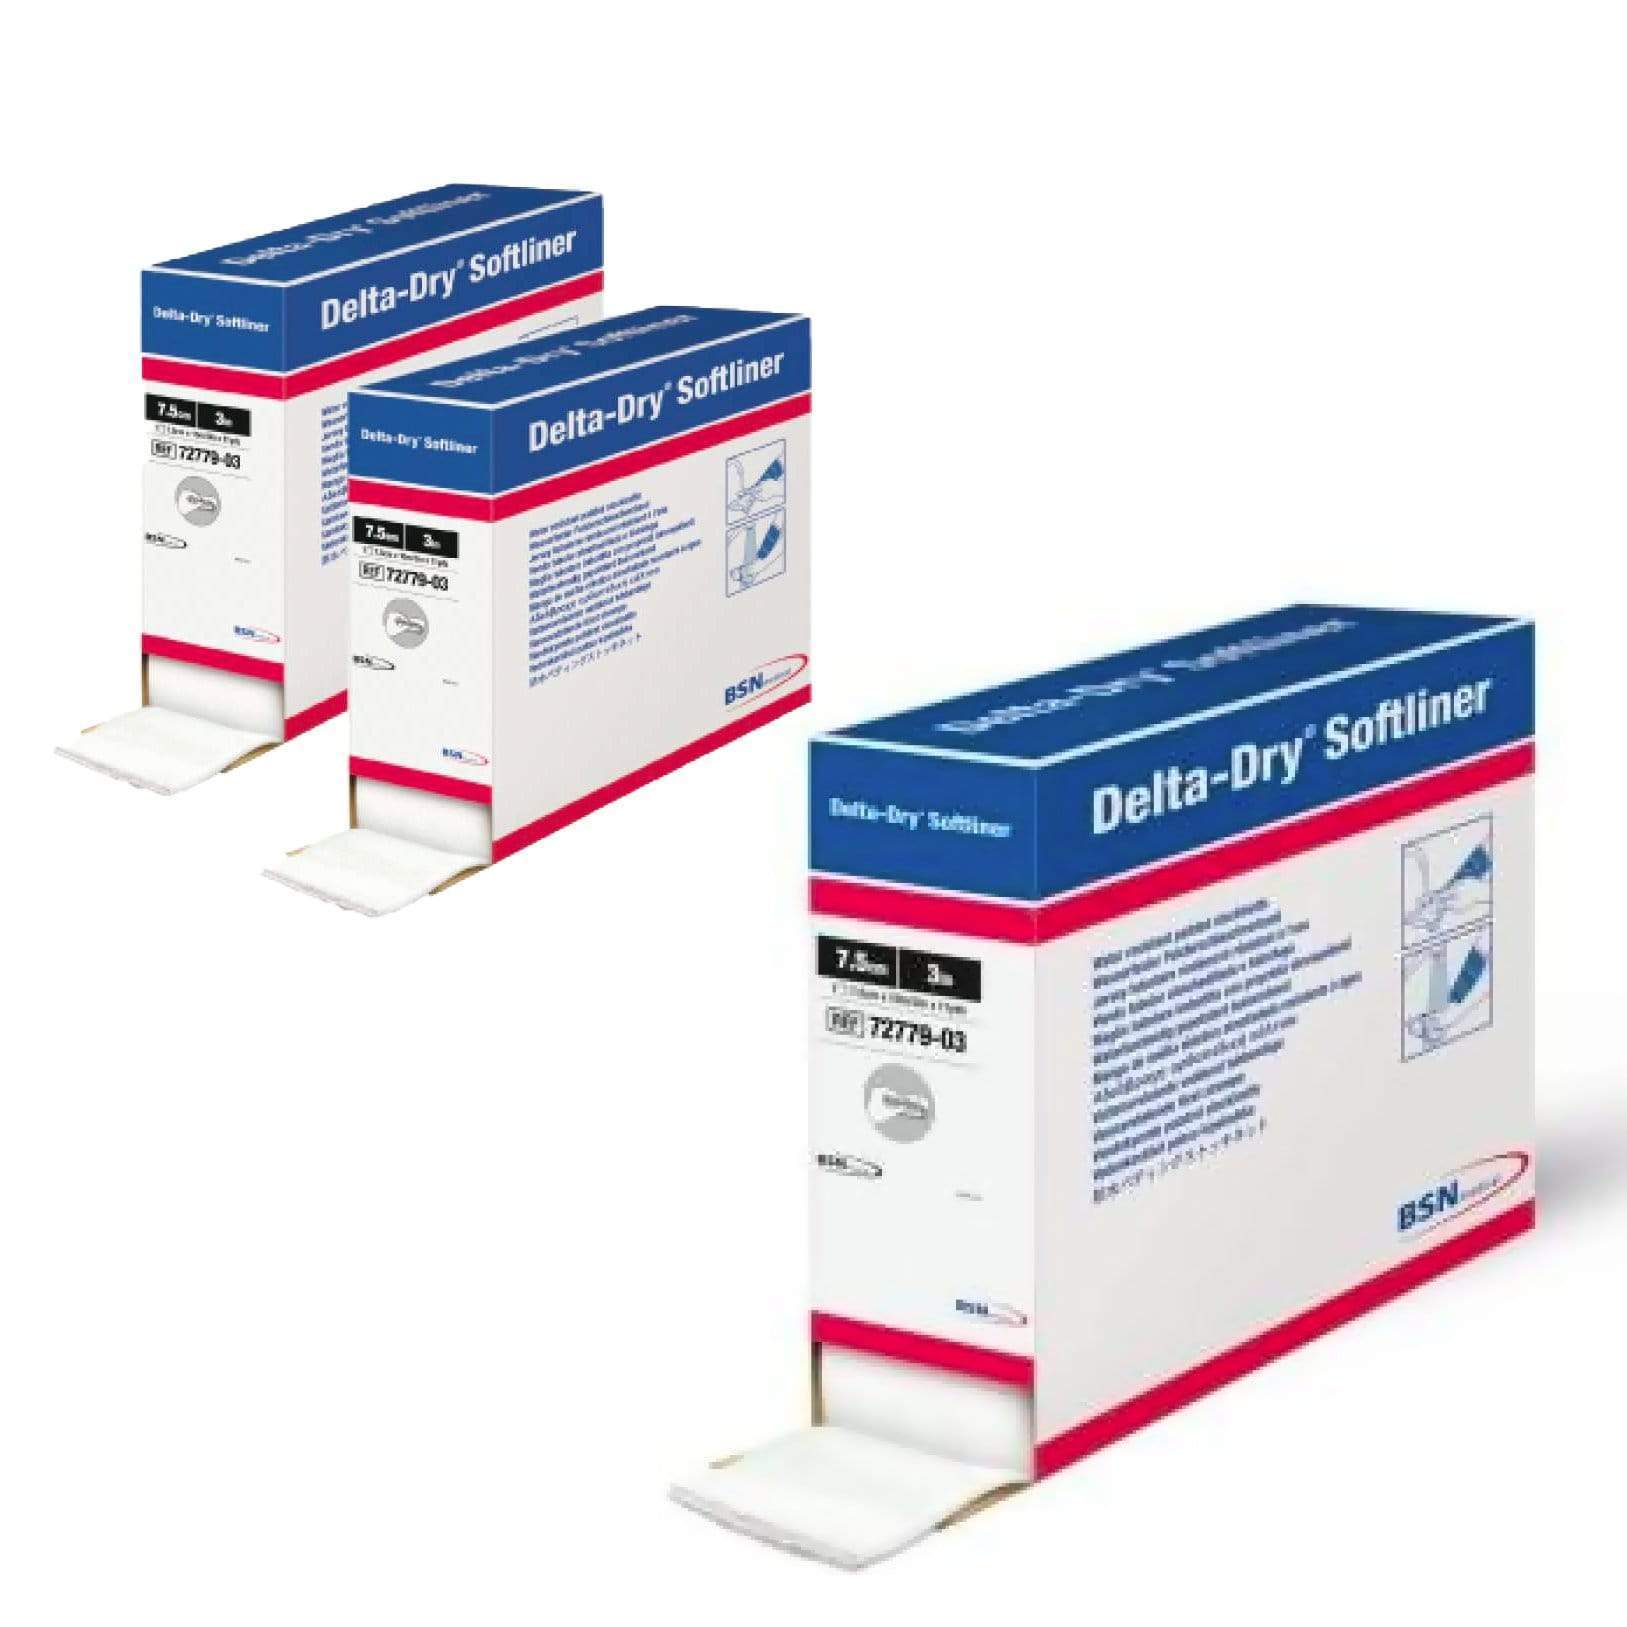 BSN Medical Delta-Dry Softliner